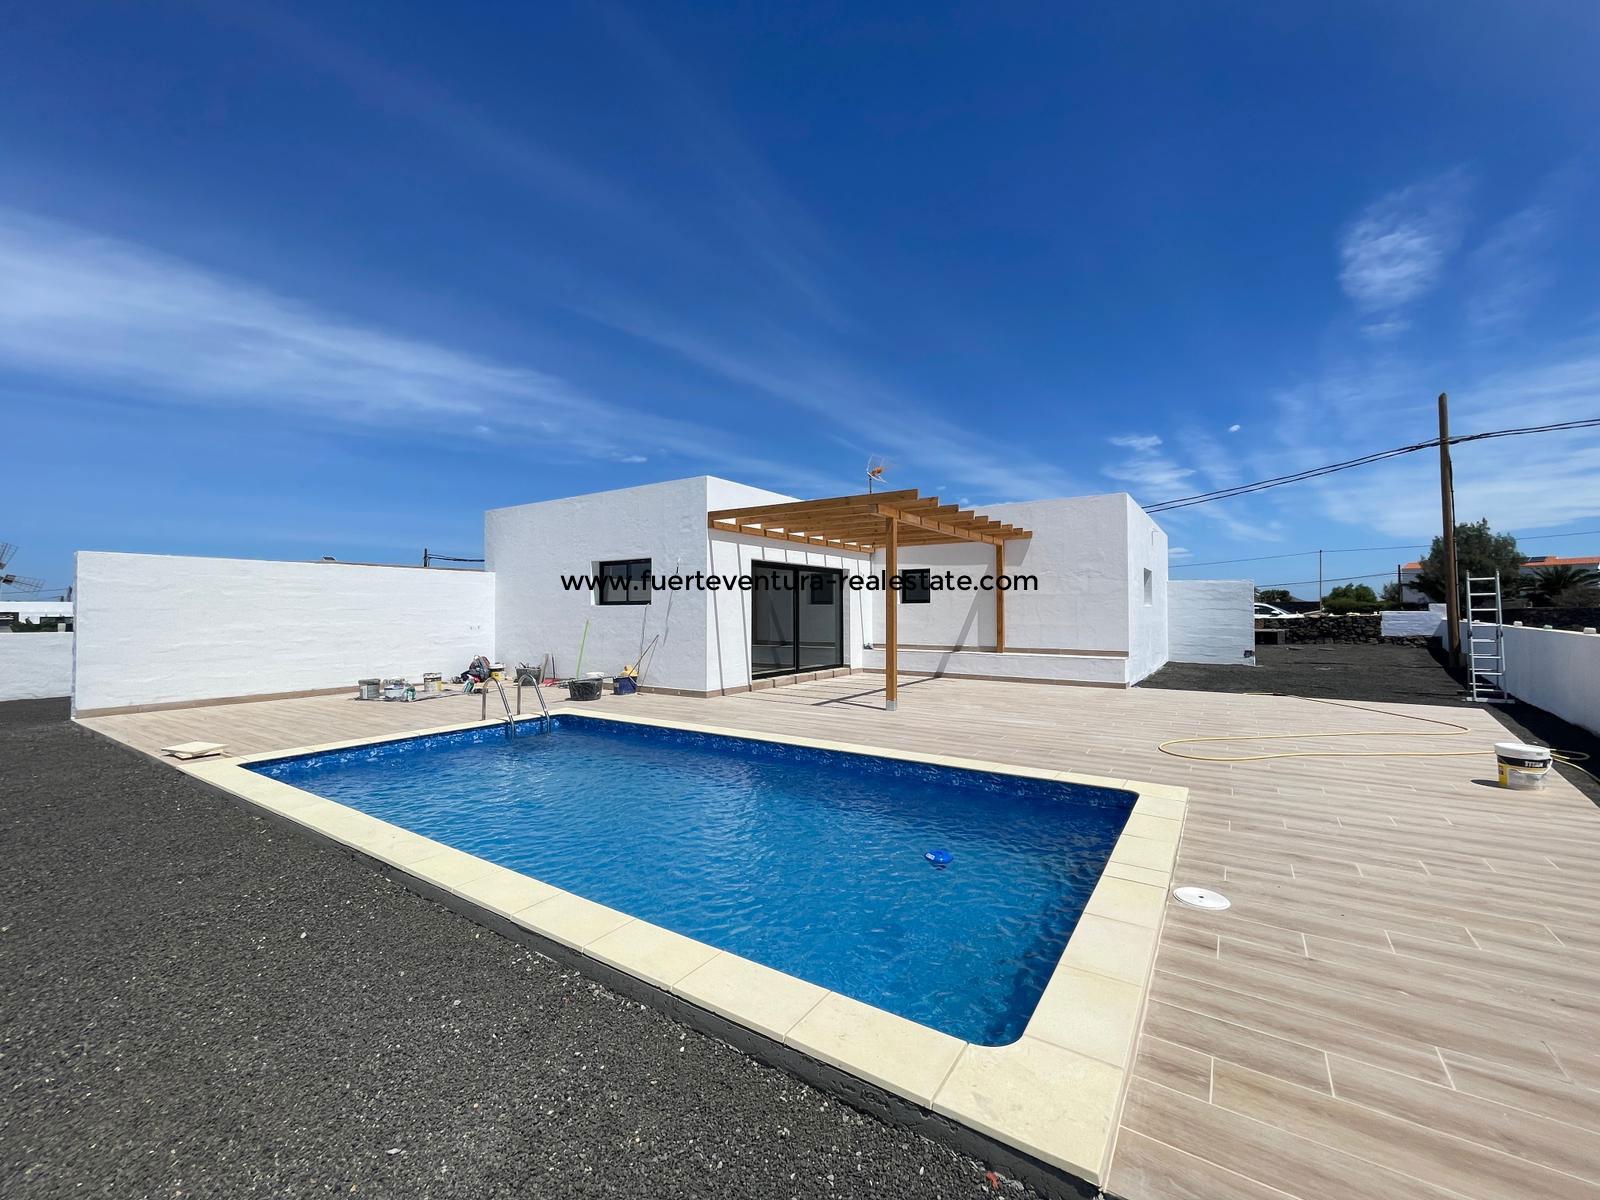  Se vende una villa moderna de nueva construcción con piscina en Lajares